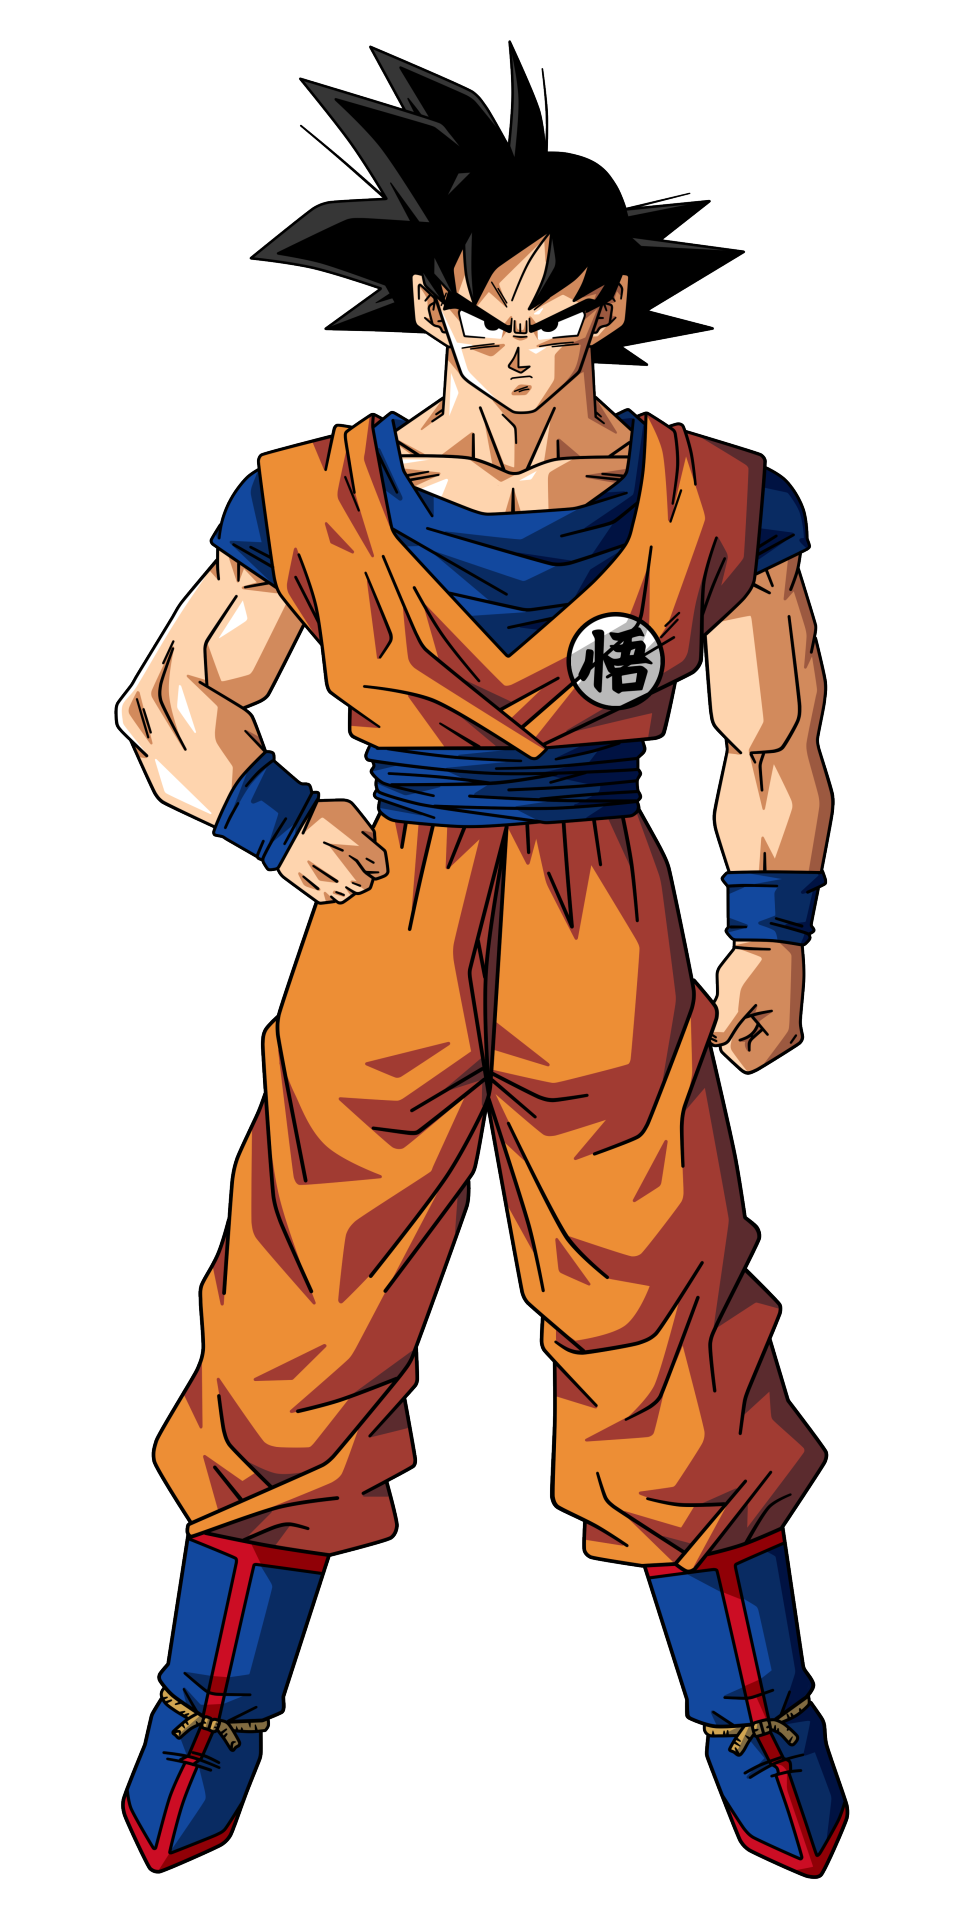 Goku Manga PNG Image